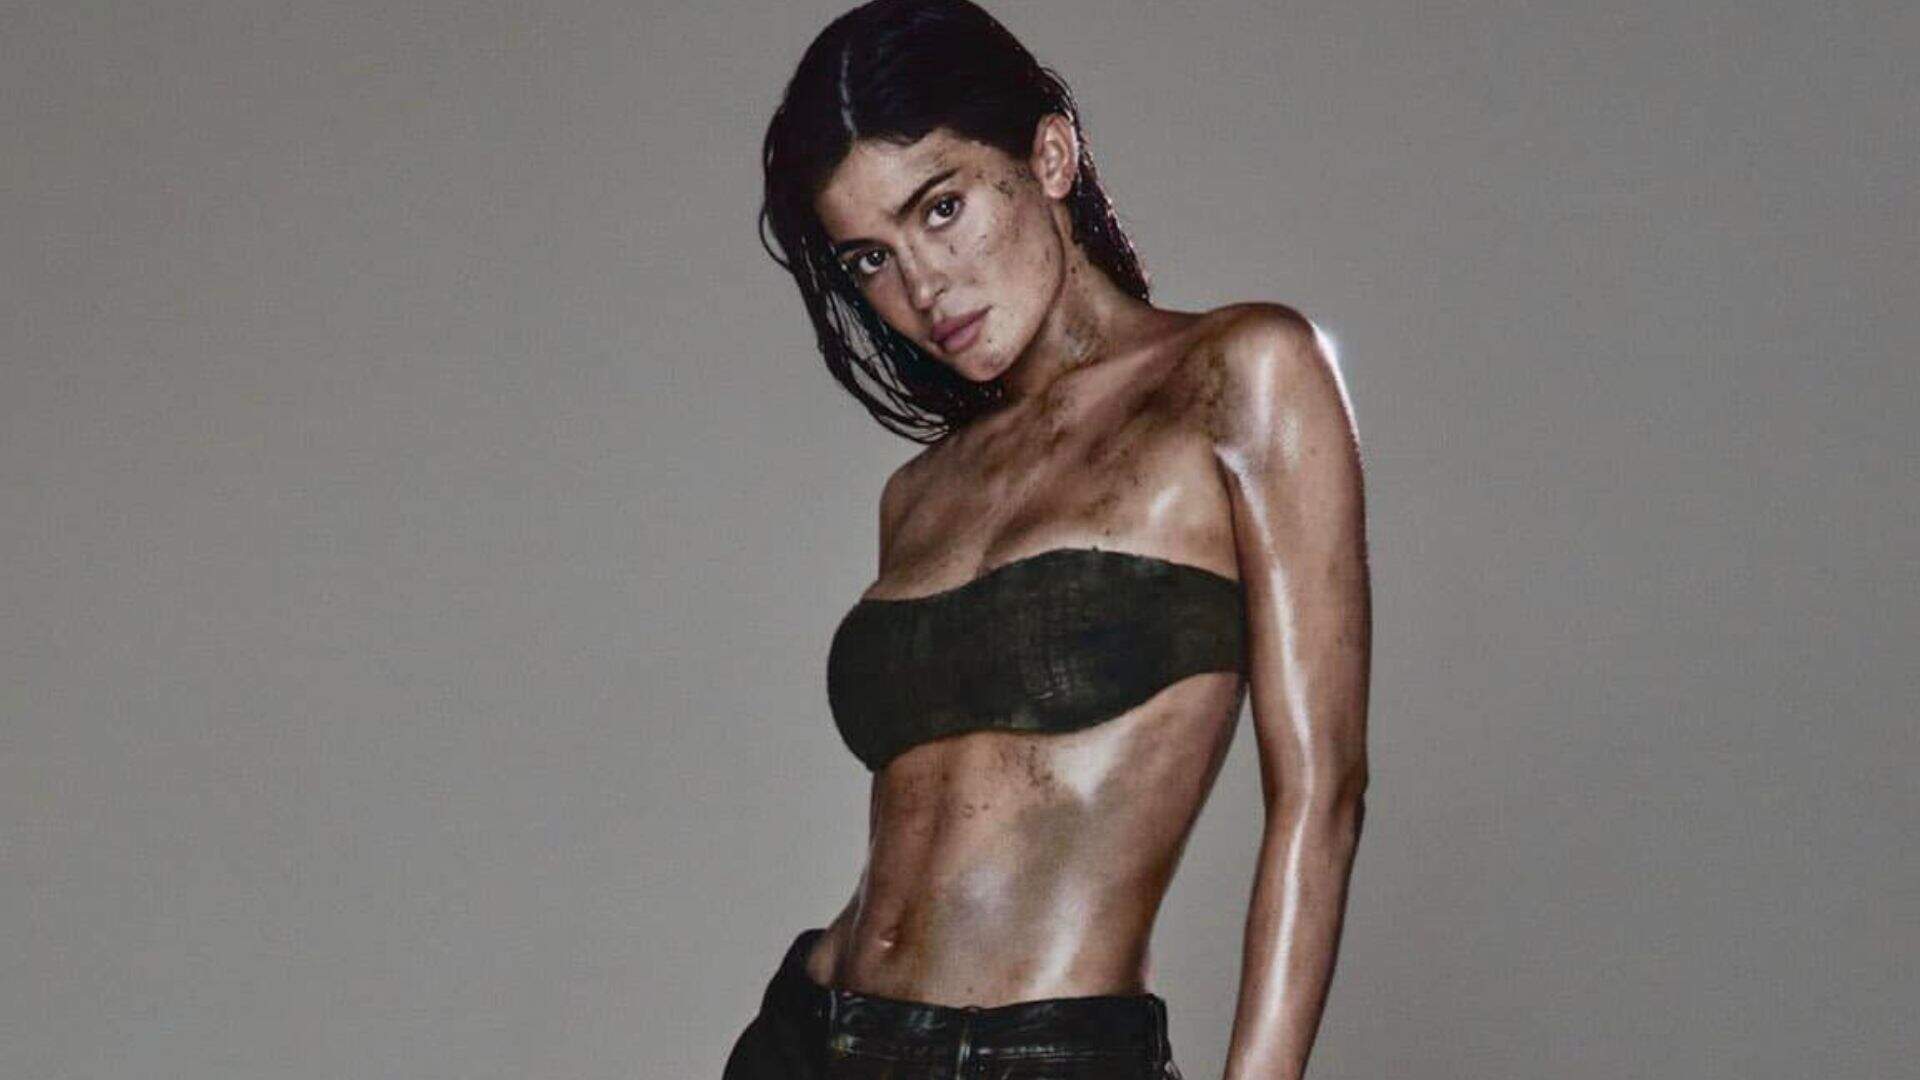 Coberta de lama, Kylie Jenner é a estrela da nova campanha de jeans da Acne Studios - Metropolitana FM